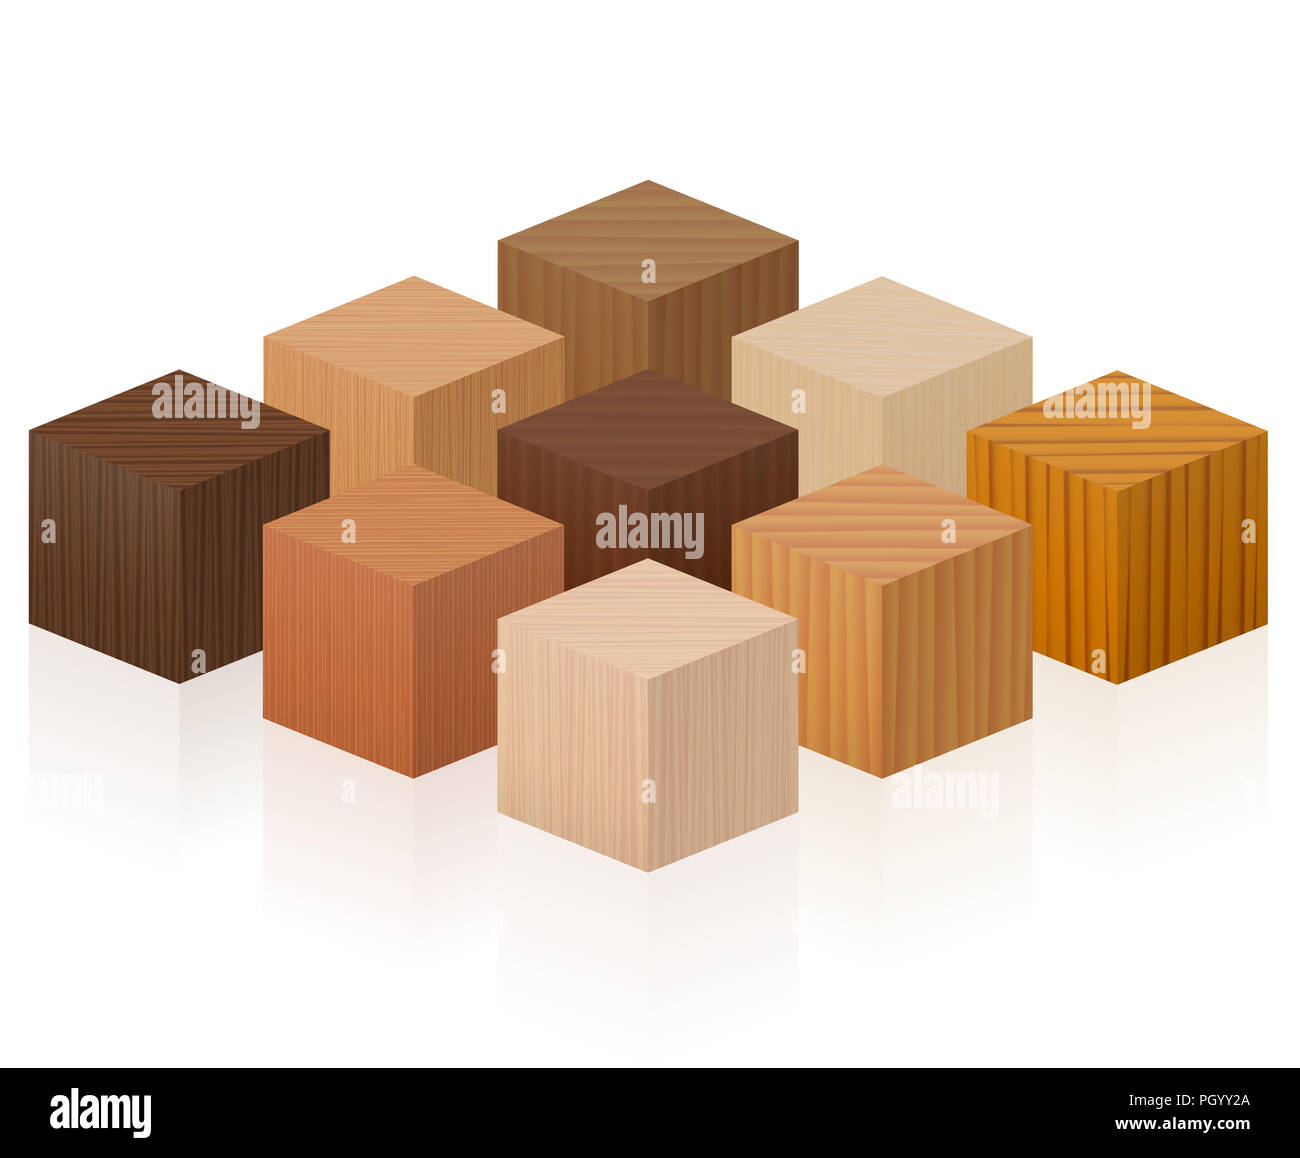 Holzwürfel - Holz Proben mit verschiedenen Texturen, Farben, Lasuren, aus verschiedenen Bäumen zu wählen - braun, dunkel, grau, Licht, rot, gelb, orange. Stockfoto